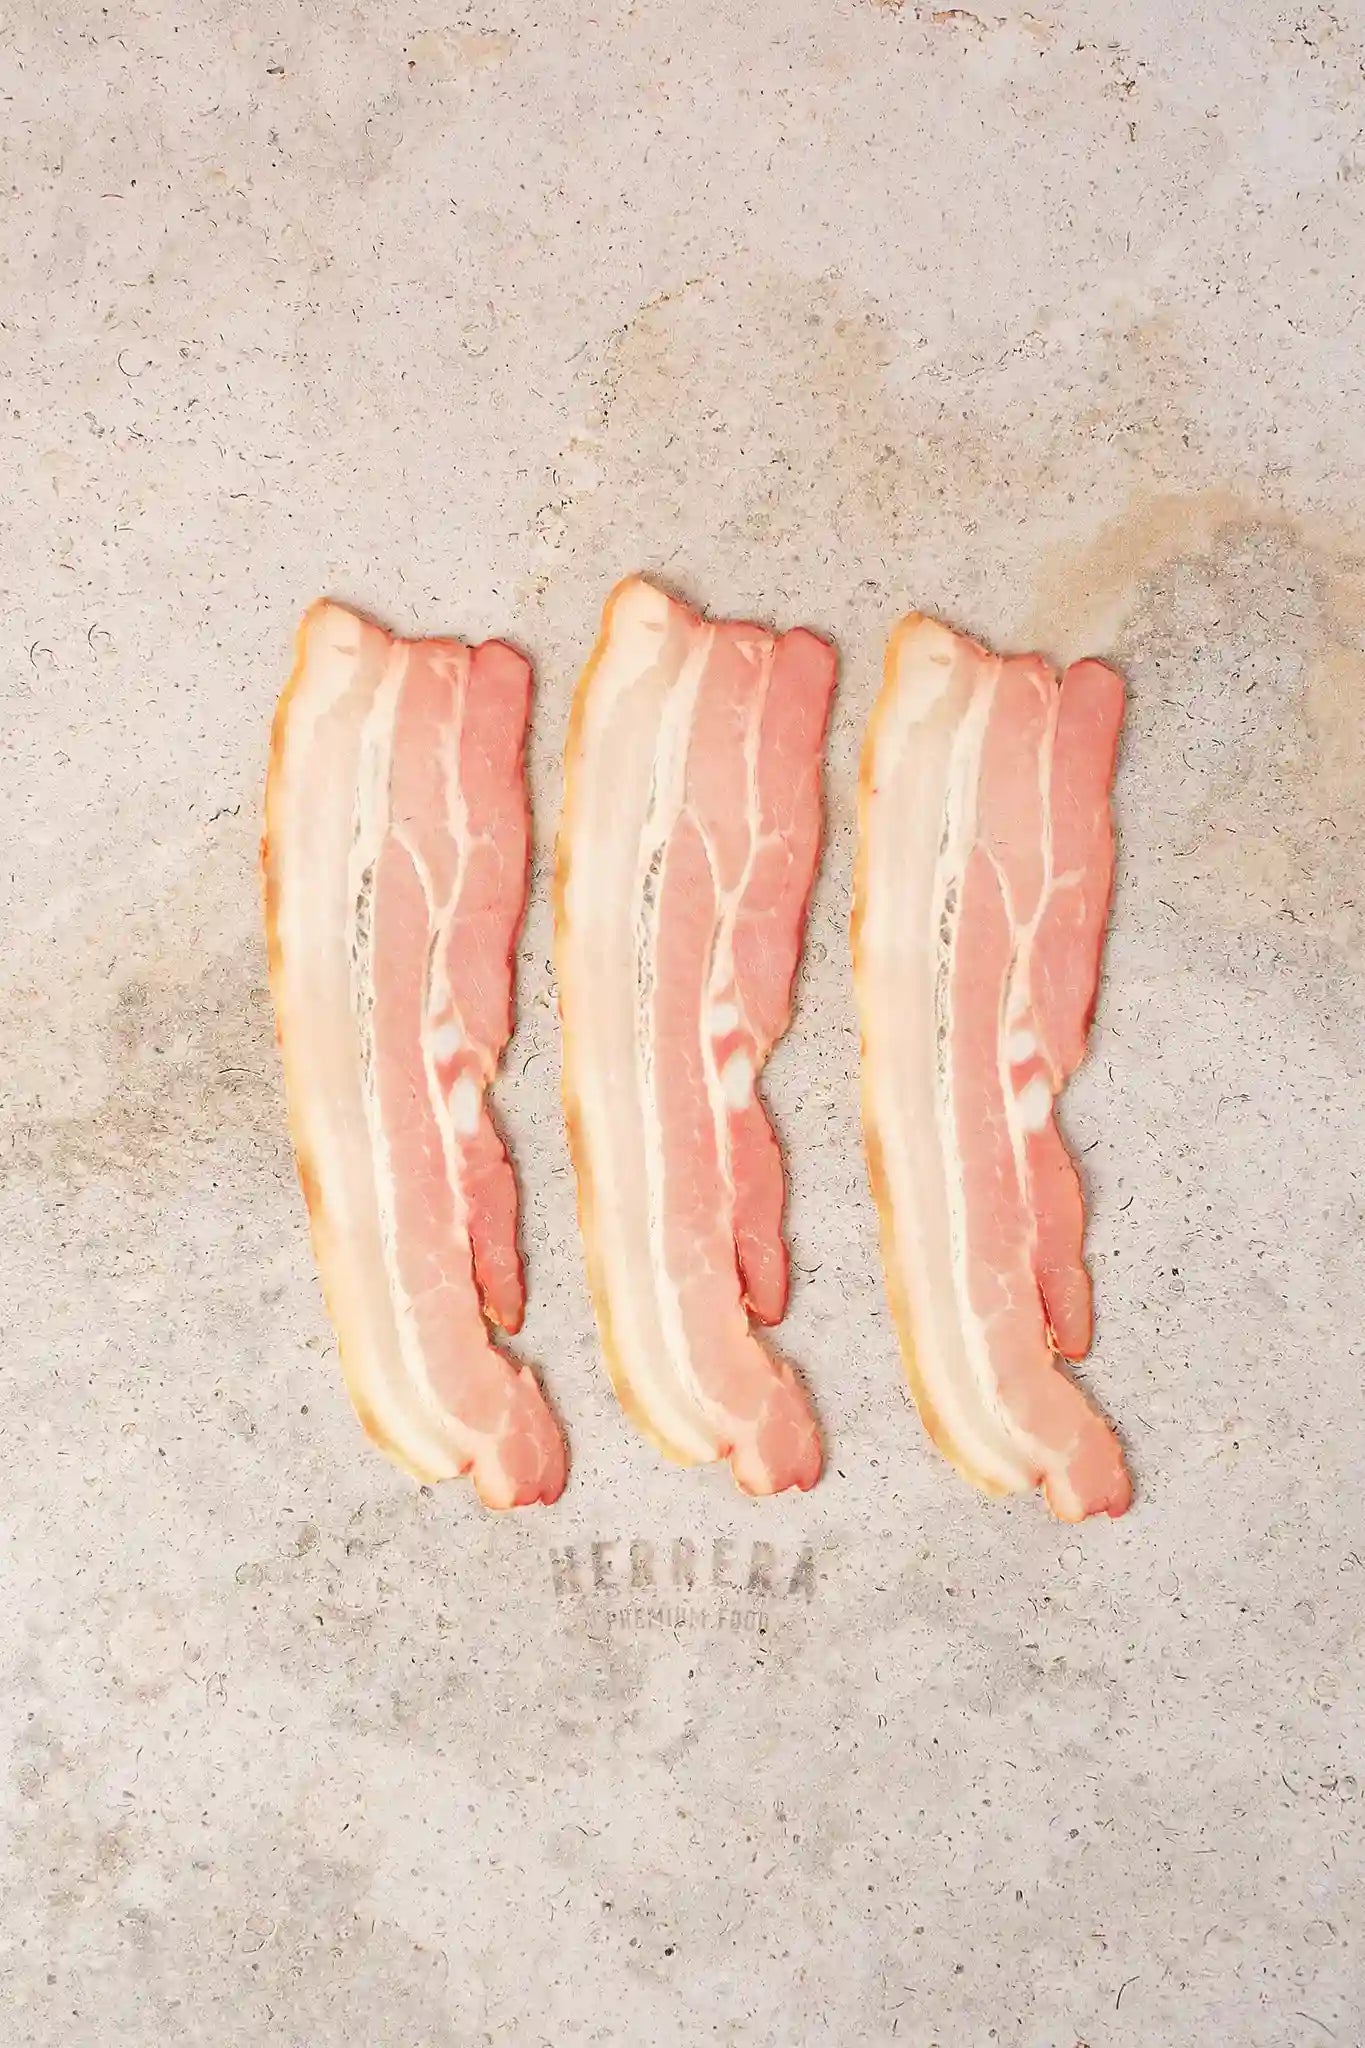 Eleva tus comidas con el sabor único del Bacon de Cerdo